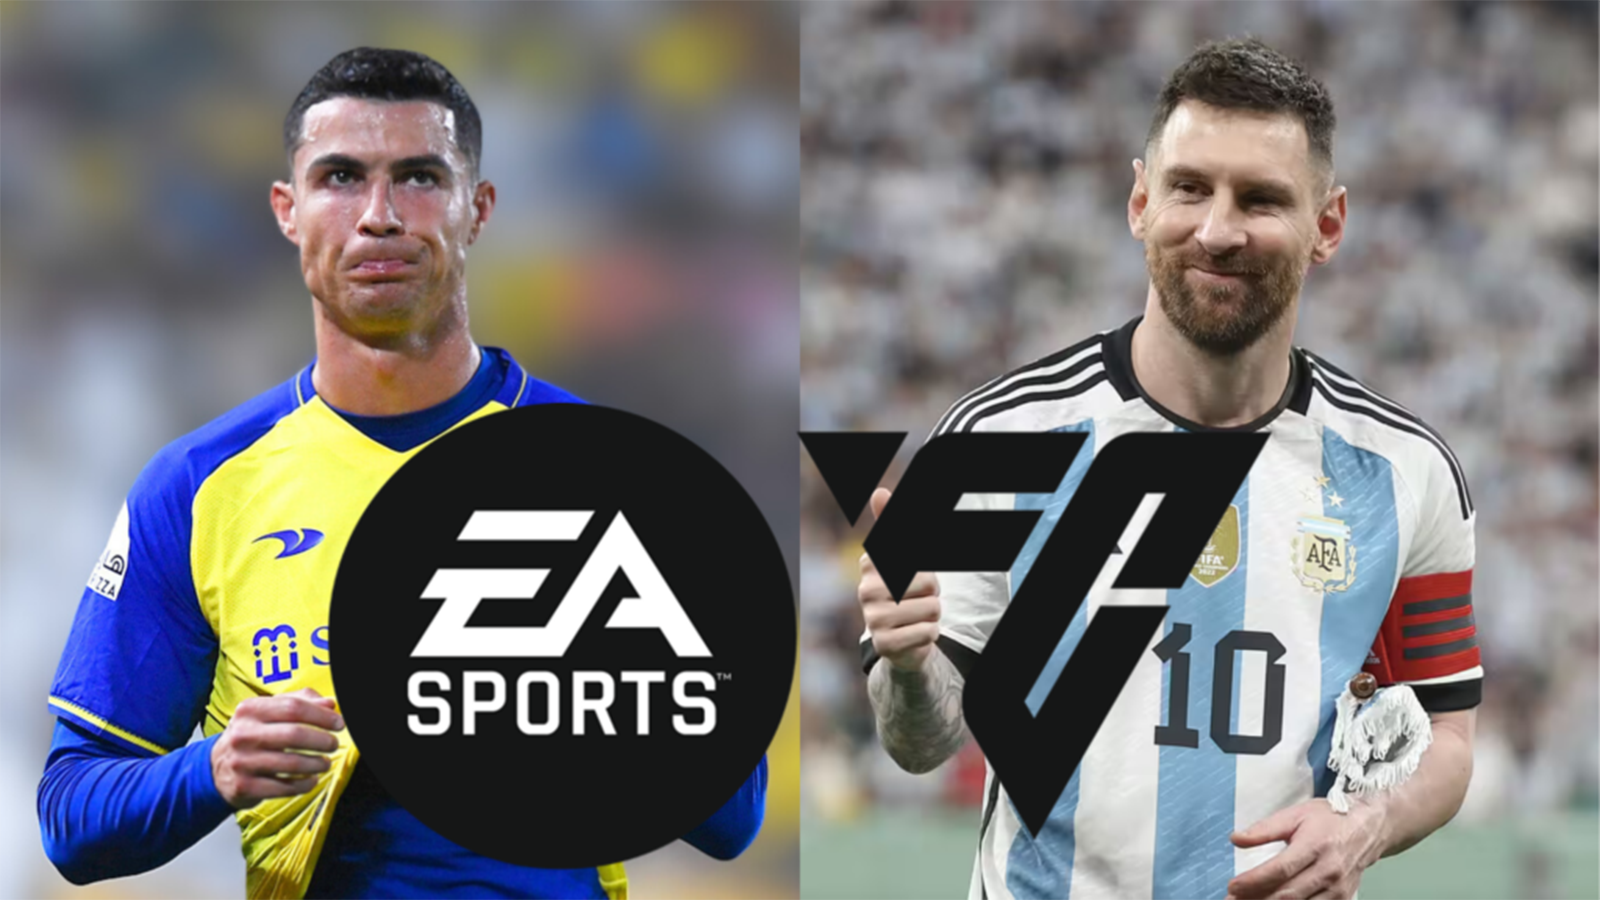 EA FC 24 - Leaked Player Ratings Spark Debate